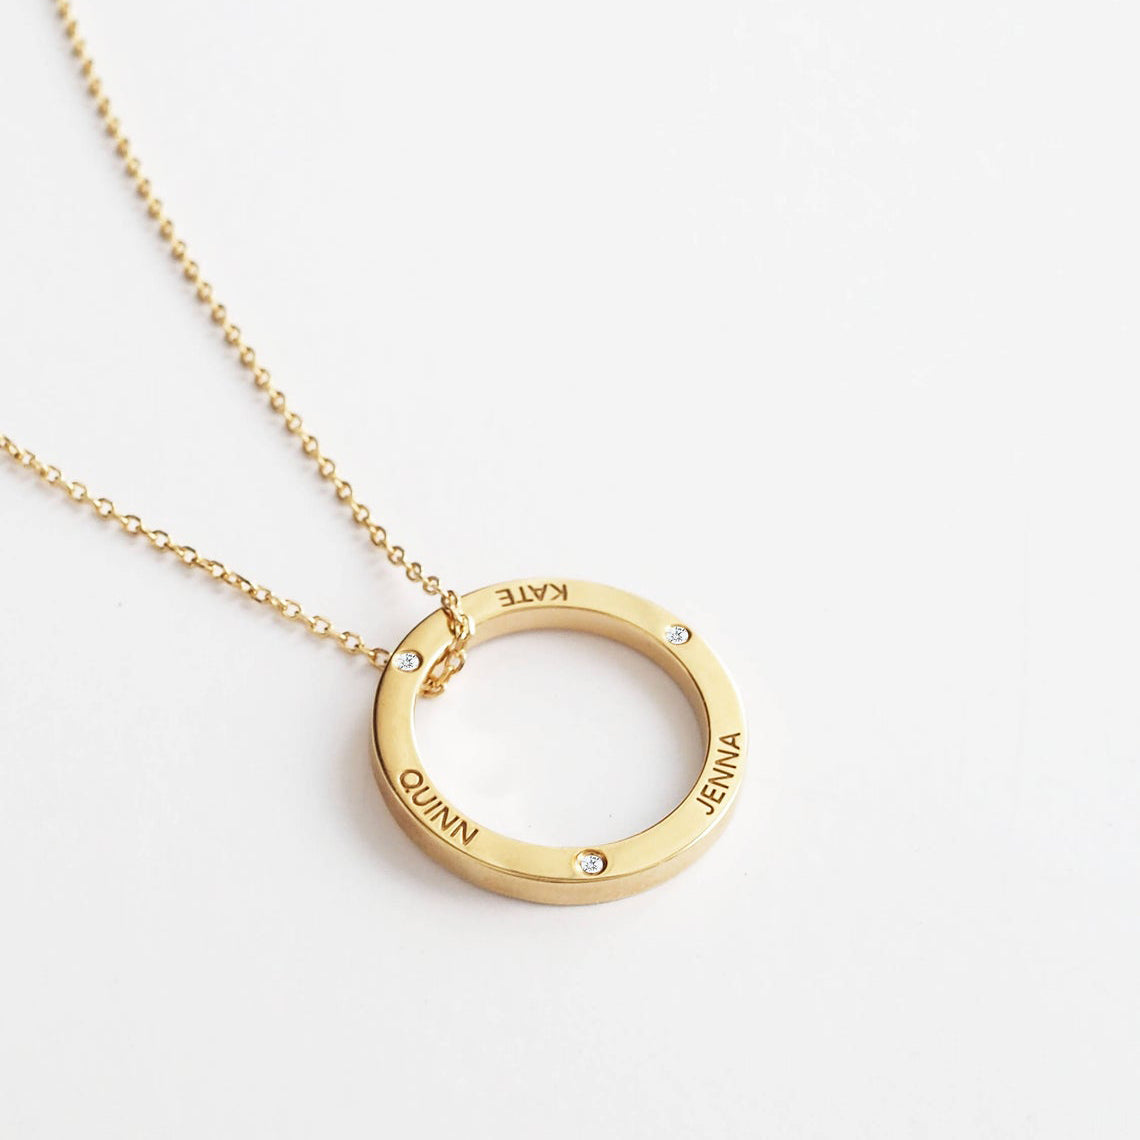 Selenichast linked circle custom name necklace